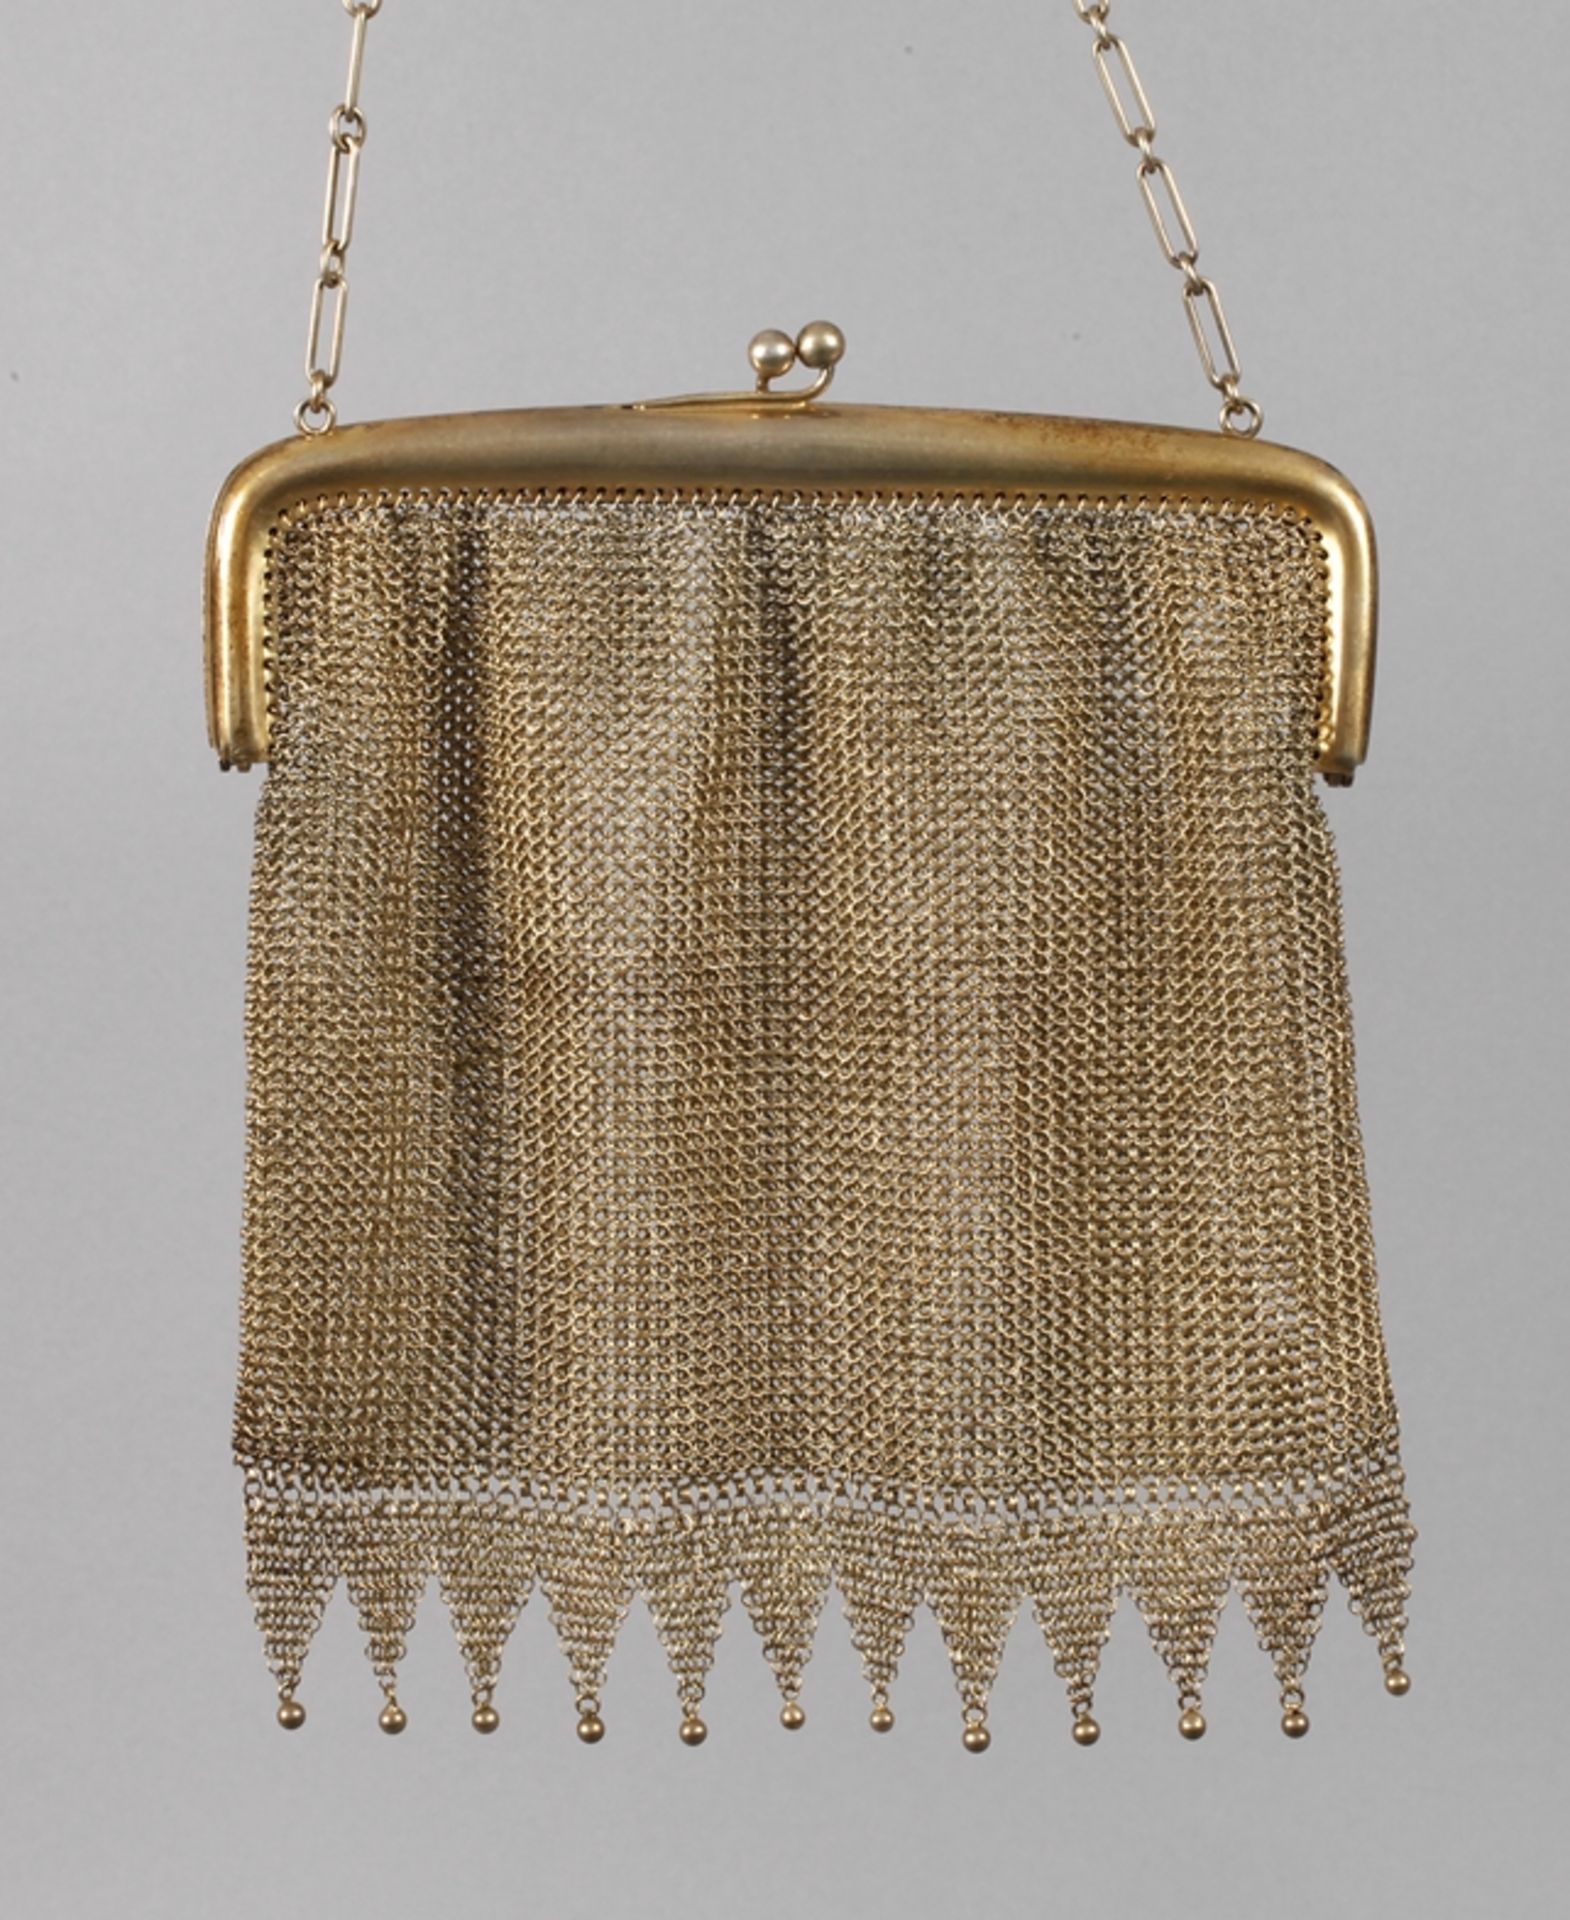 Theatertasche Silber vergoldetum 1925, gestempelt 800, einfacher Griff mit Kugelverschluss, die